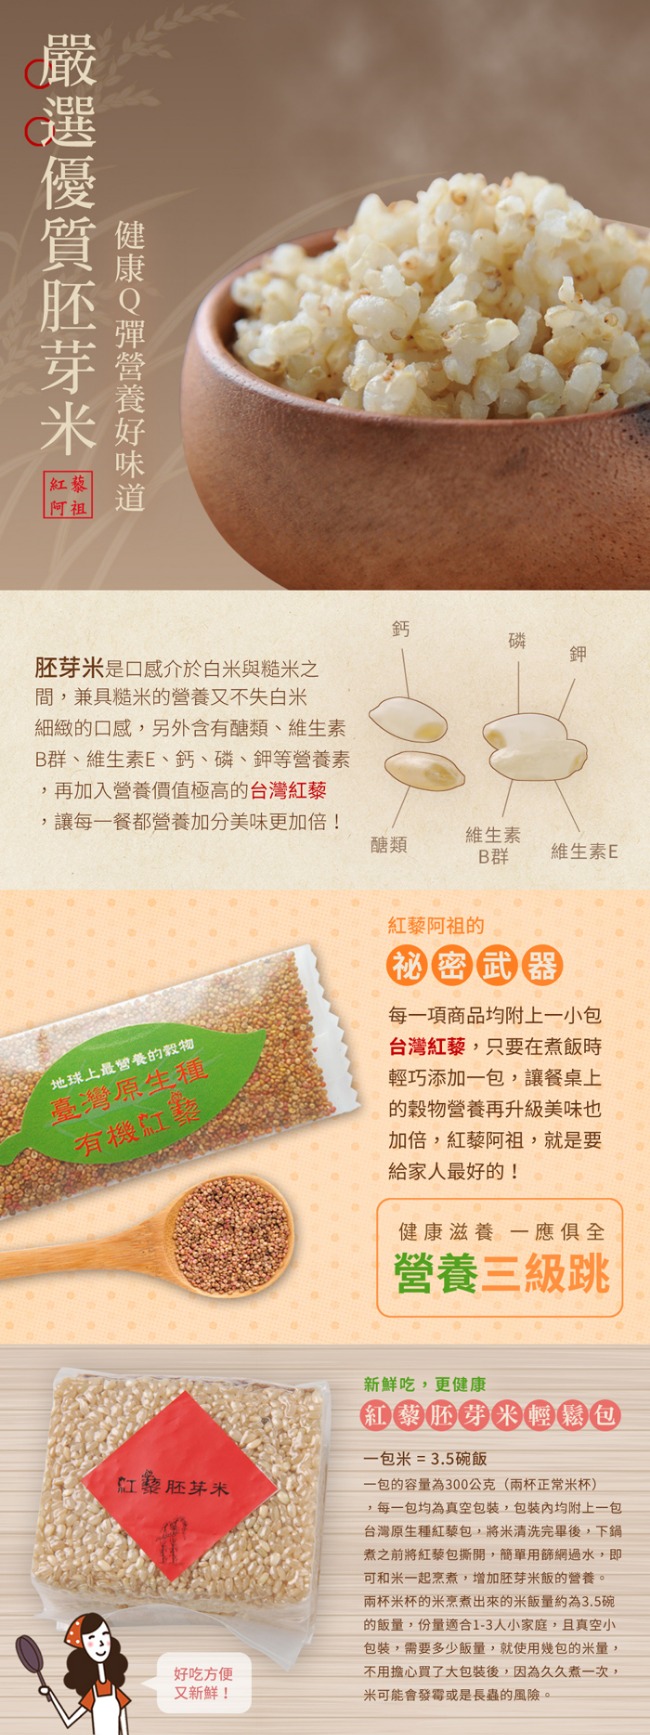 紅藜阿祖 紅藜胚芽米輕鬆包(300g/包，共6包)